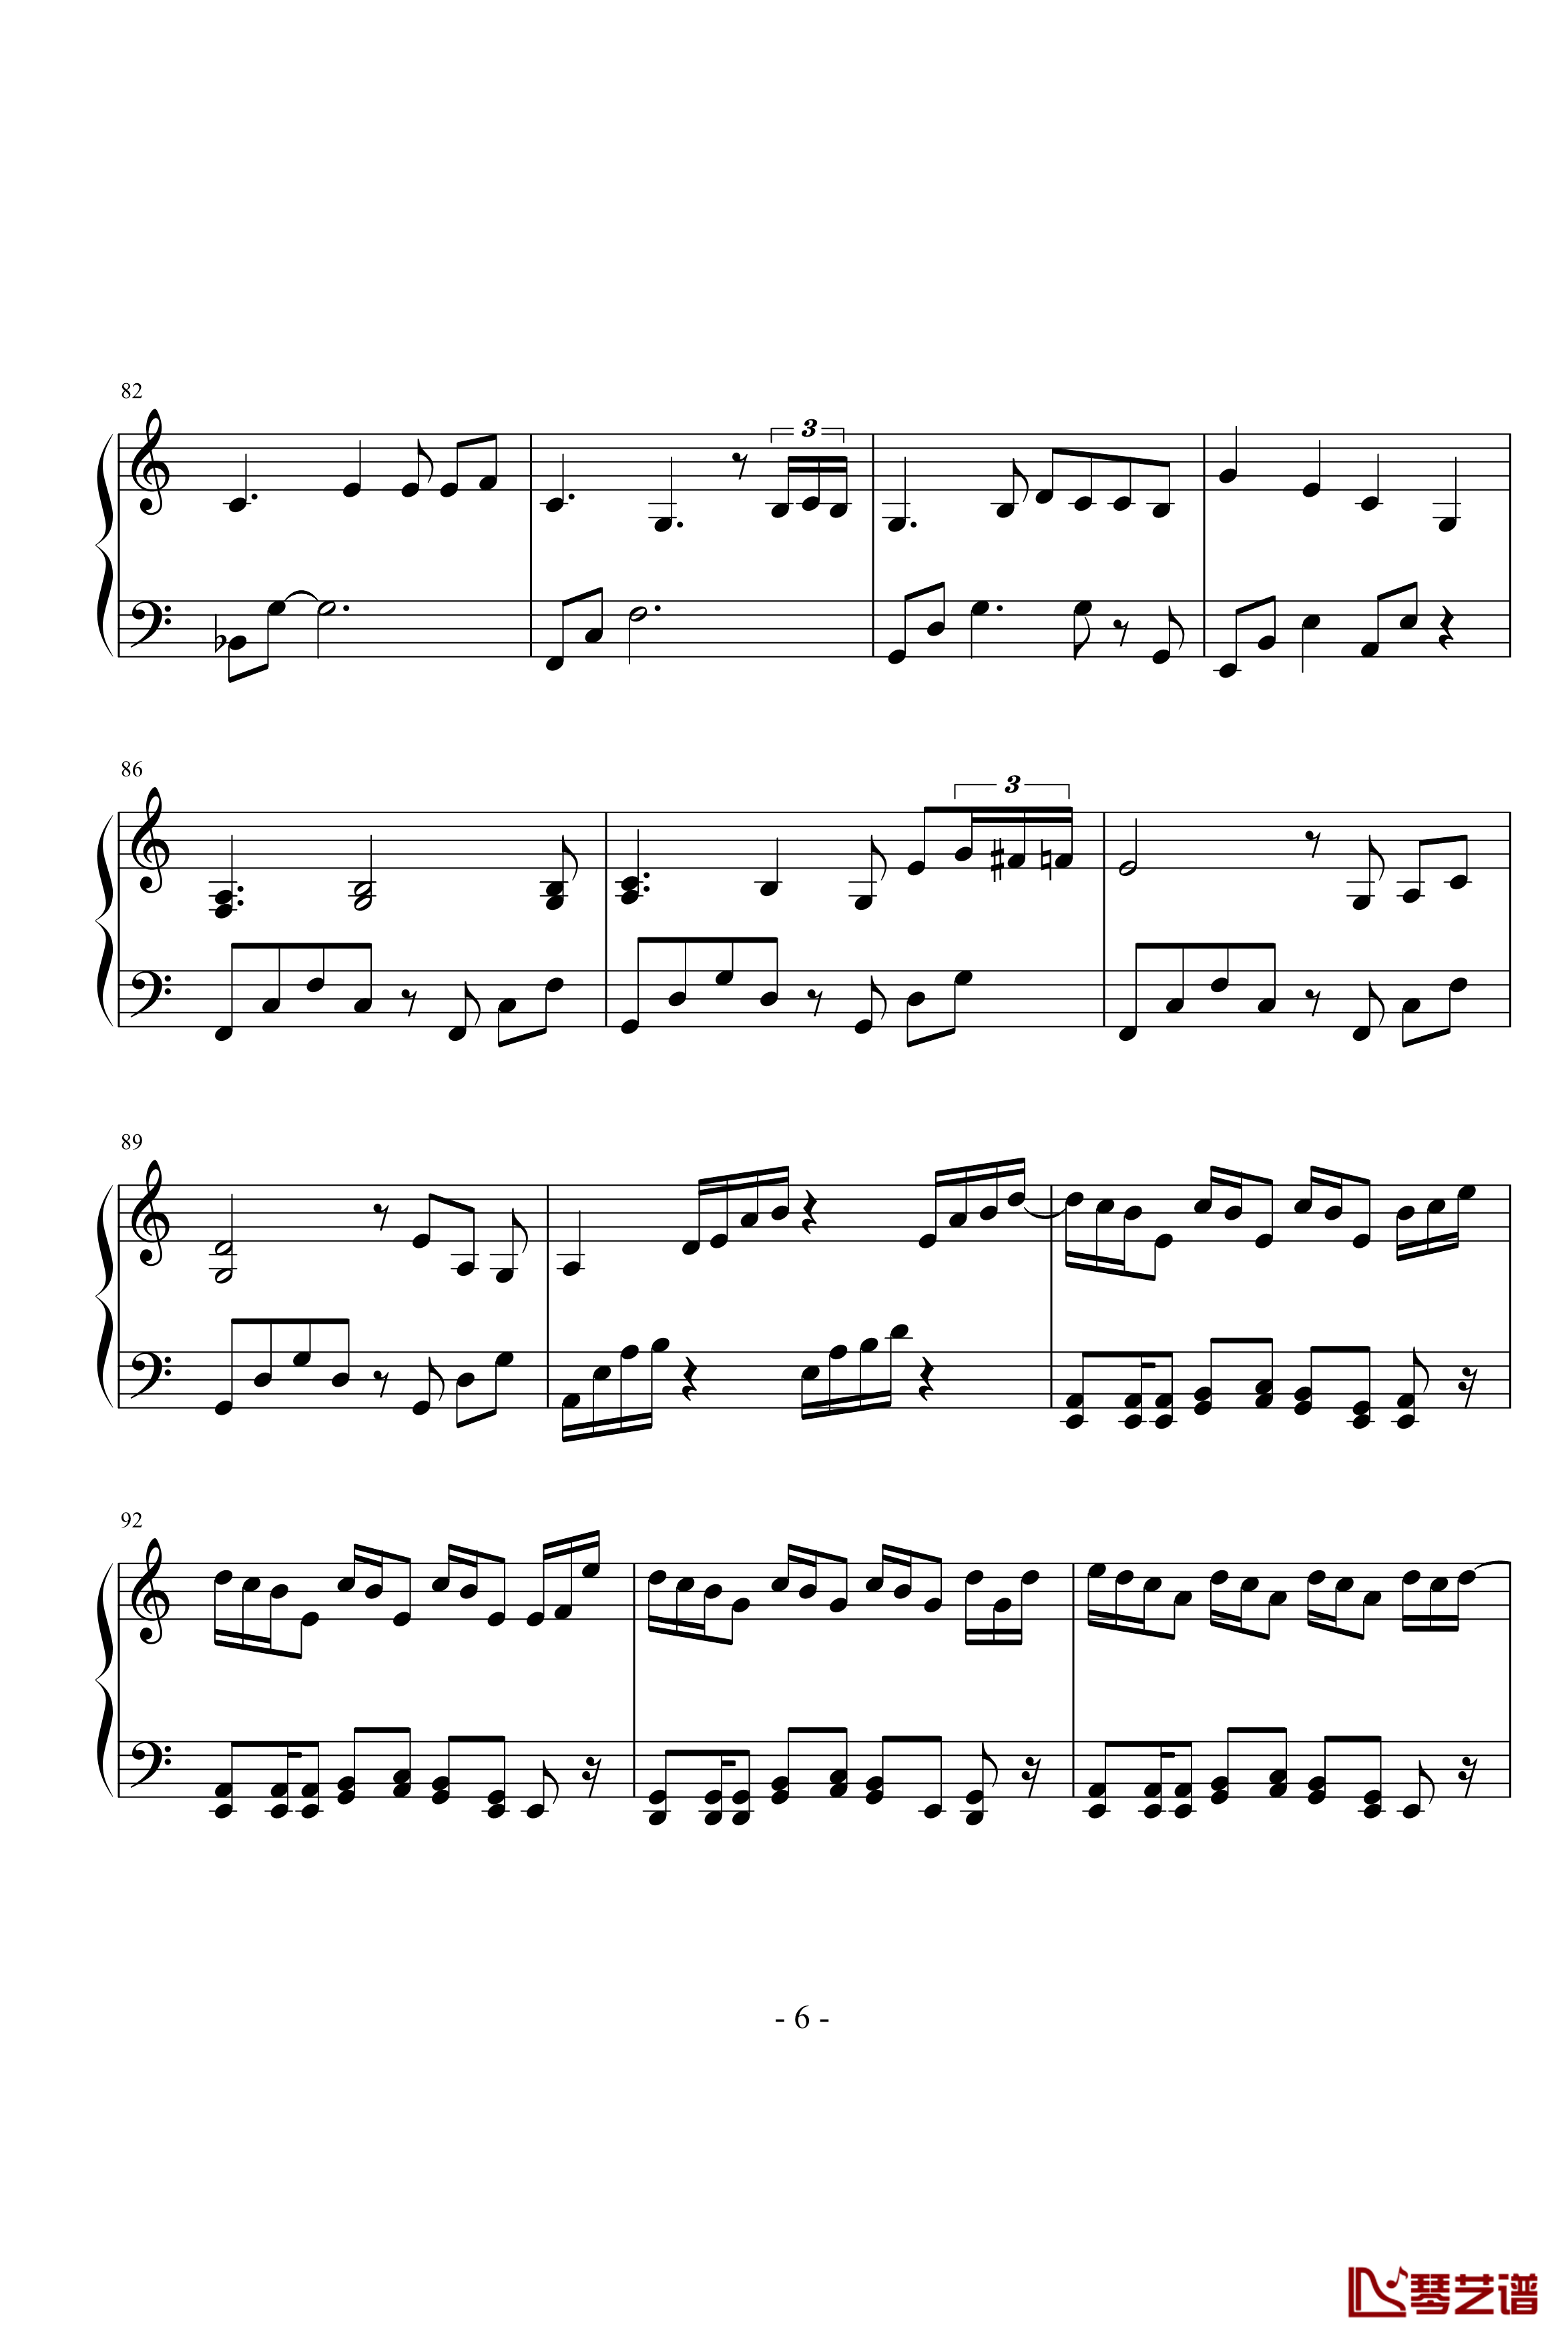 雪剑钢琴曲Op12钢琴谱-落花吹雪剑6